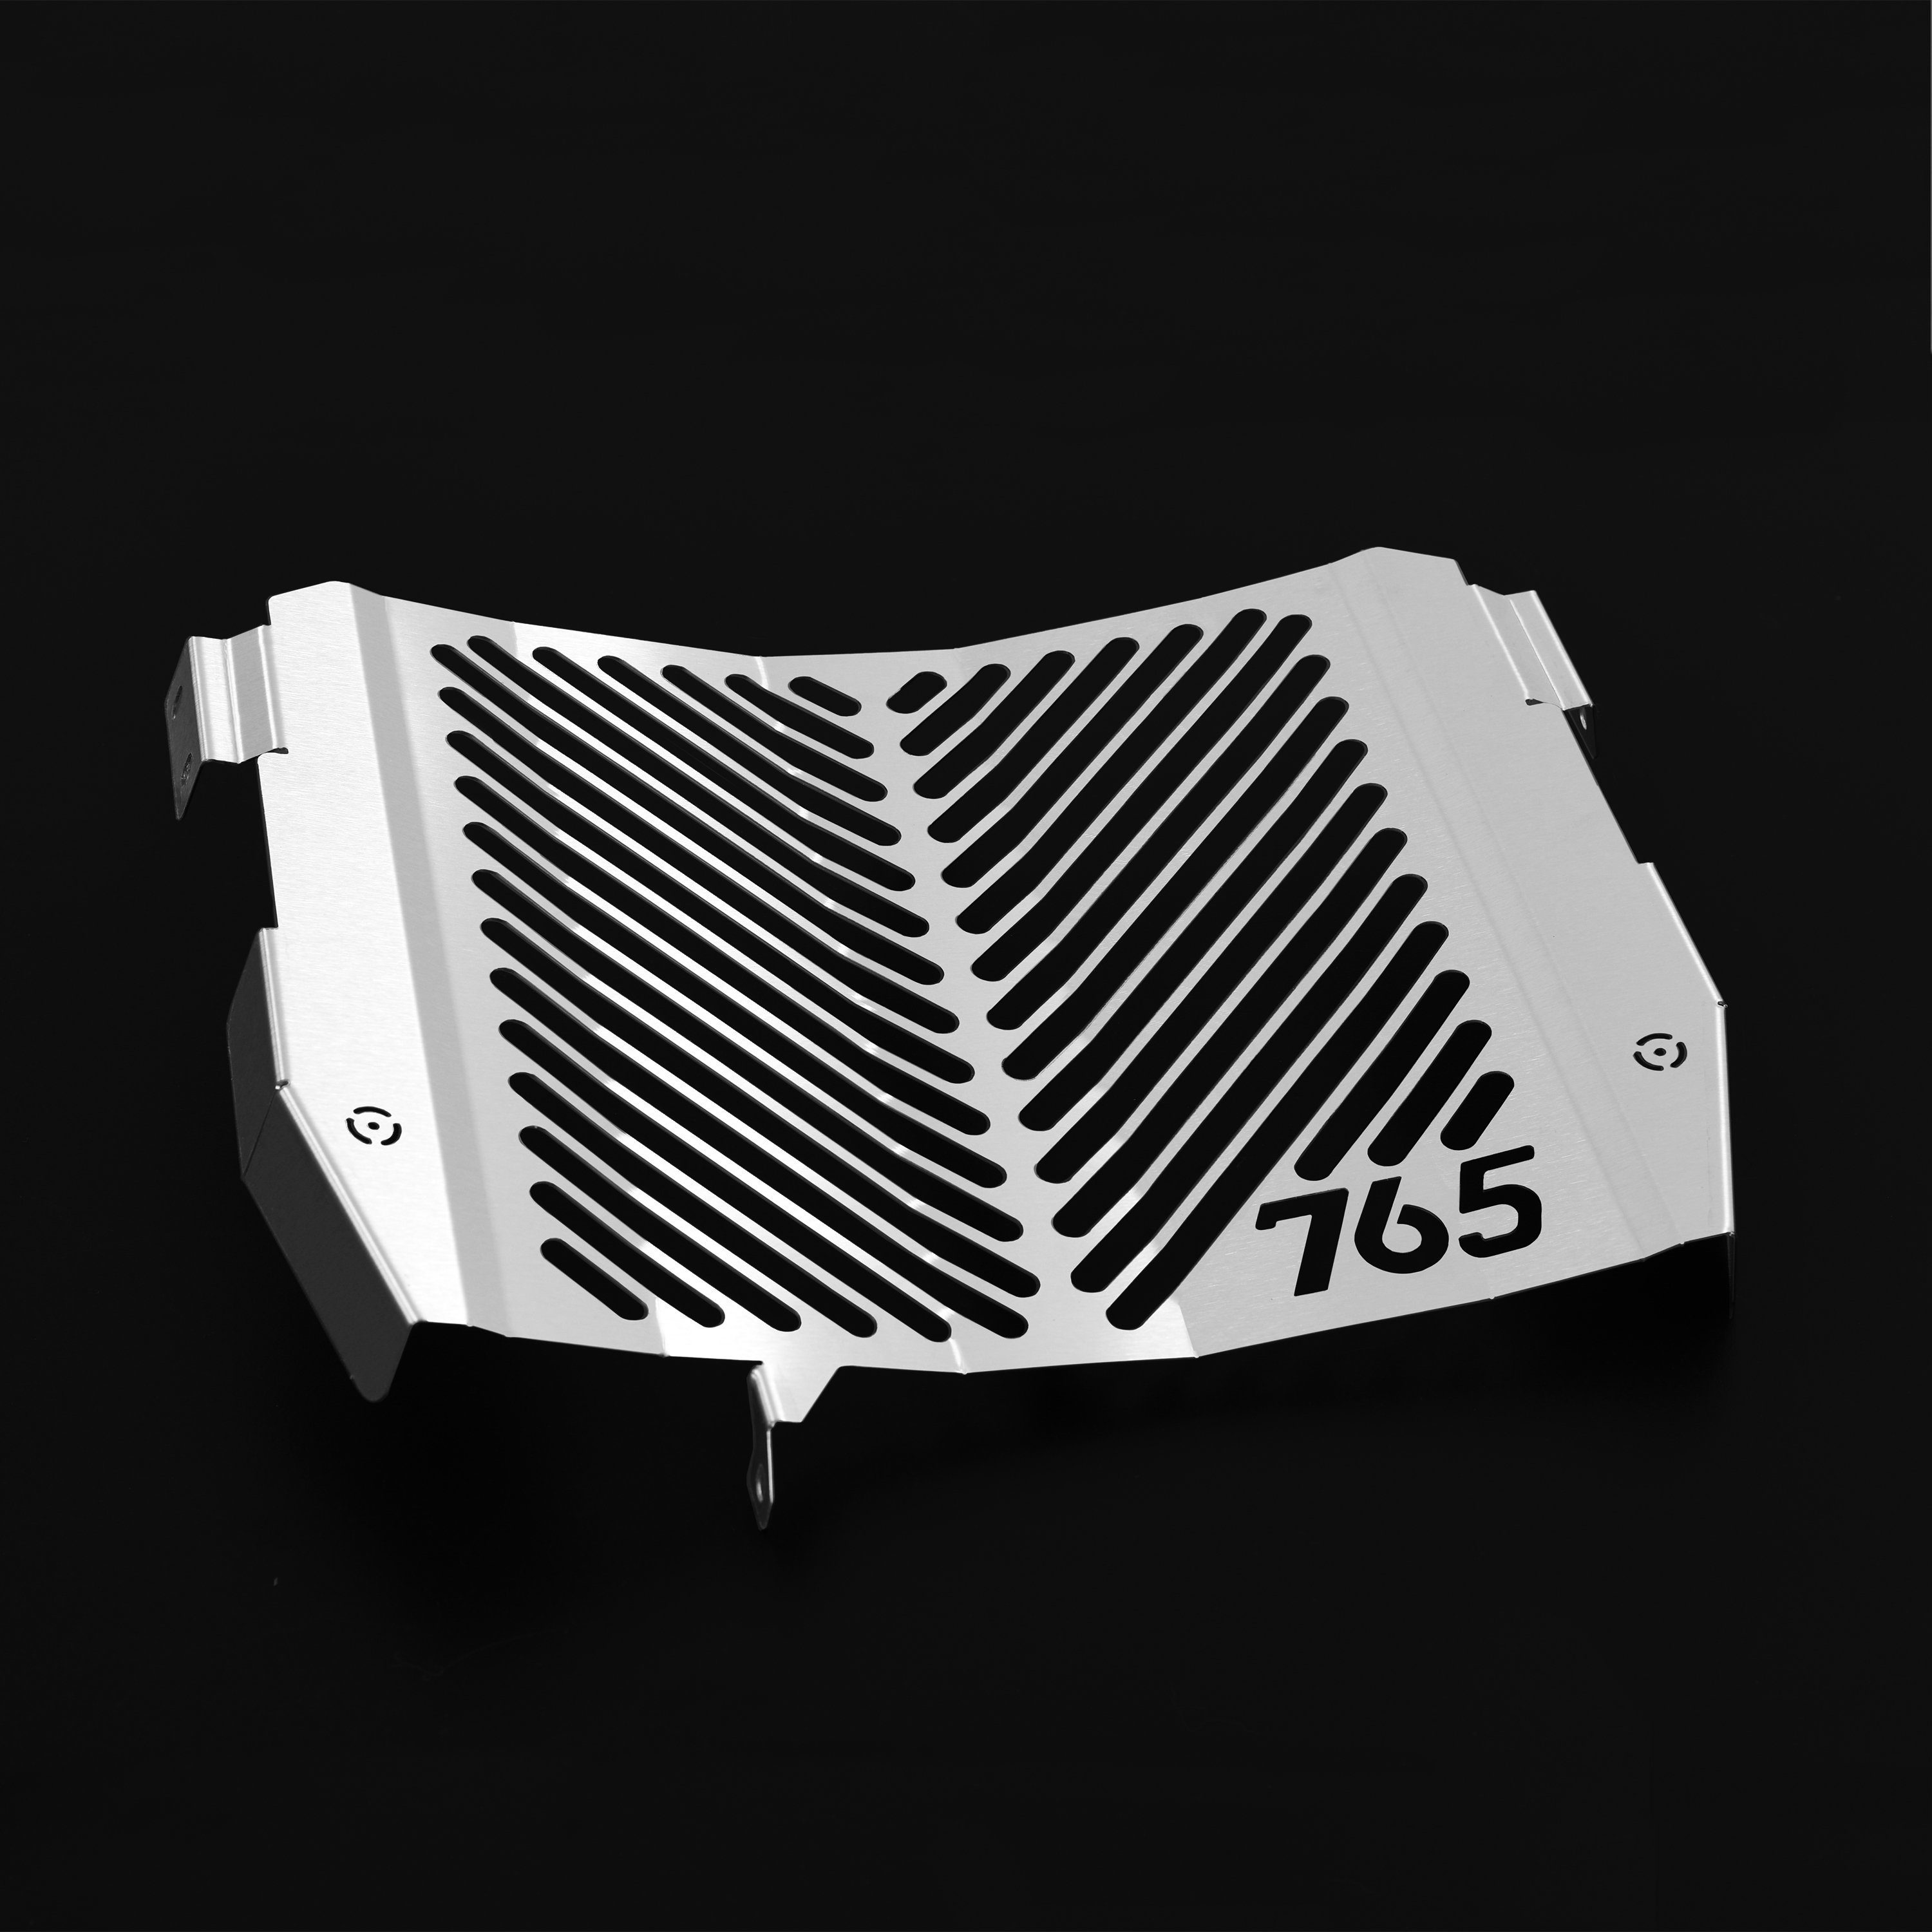 ZIEGER Motorrad-Additiv Kühlerabdeckung für Triumph Street Triple 765 R Logo silber, Motorradkühlerabdeckung